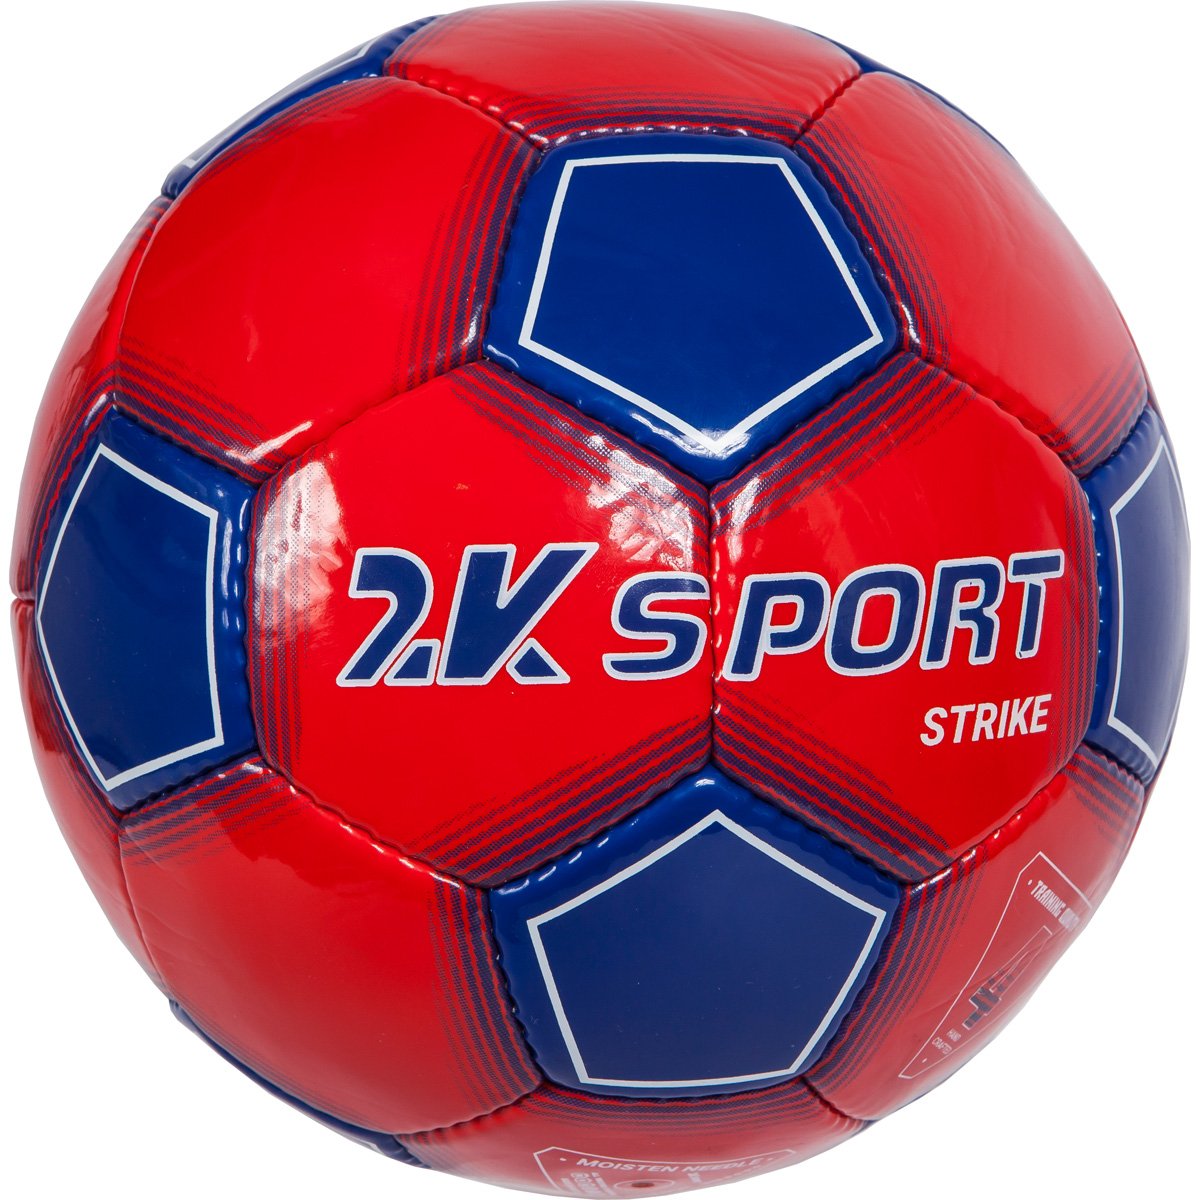 Мяч футбольный 2k Sport